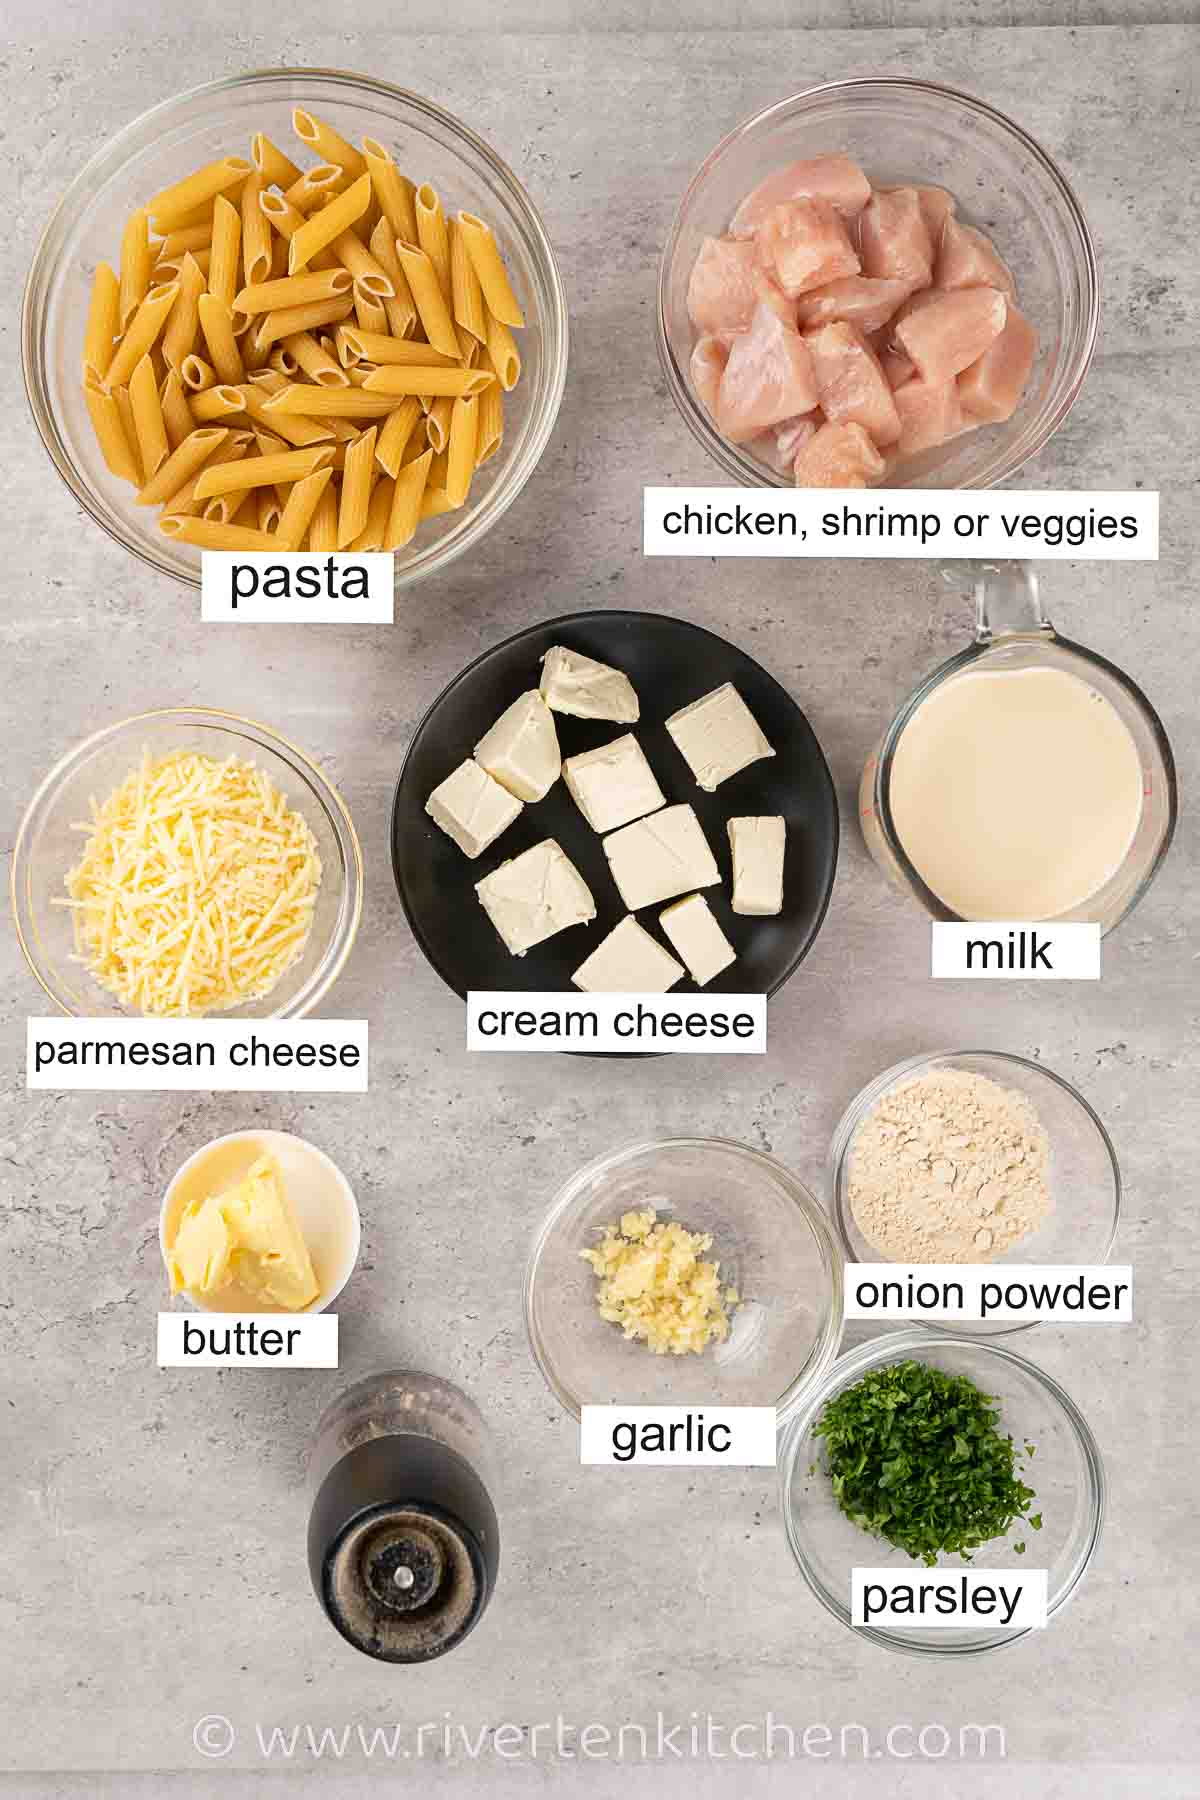 cream cheese, garlic, parsley, butter, parmesan cheese, chicken